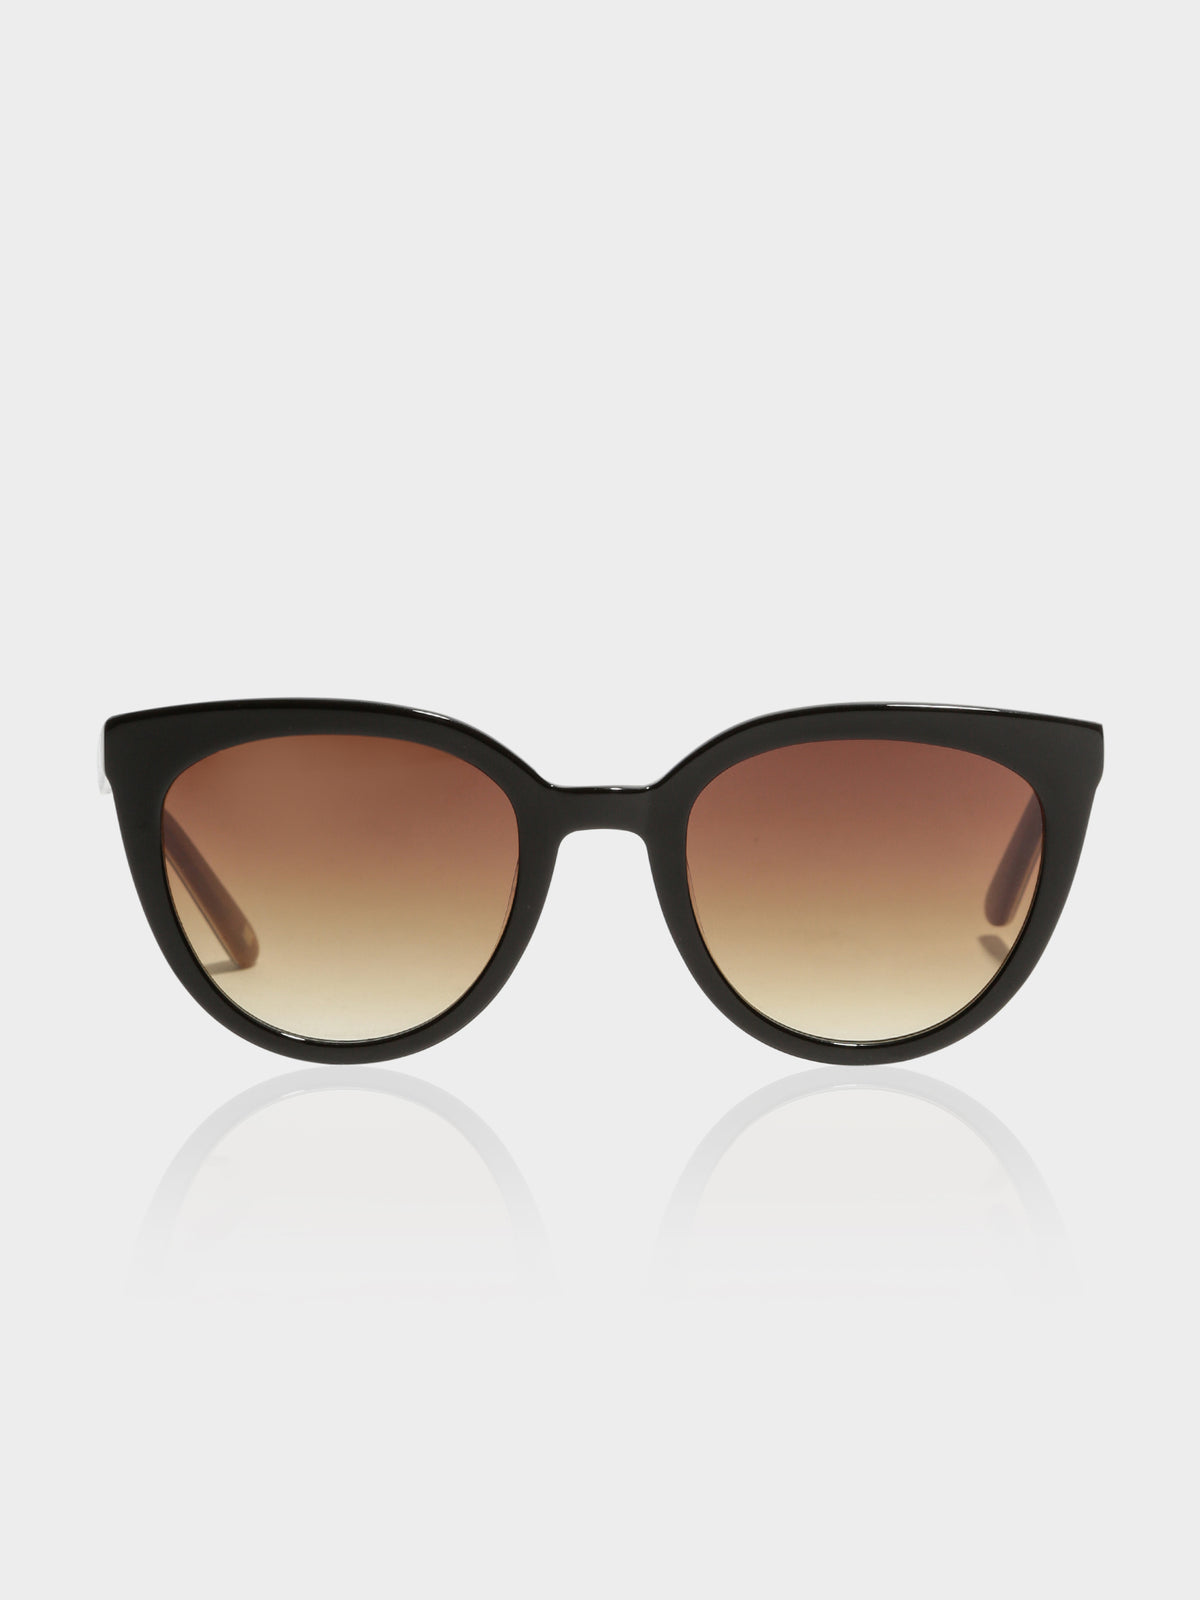 Plush Sunglasses in Brown